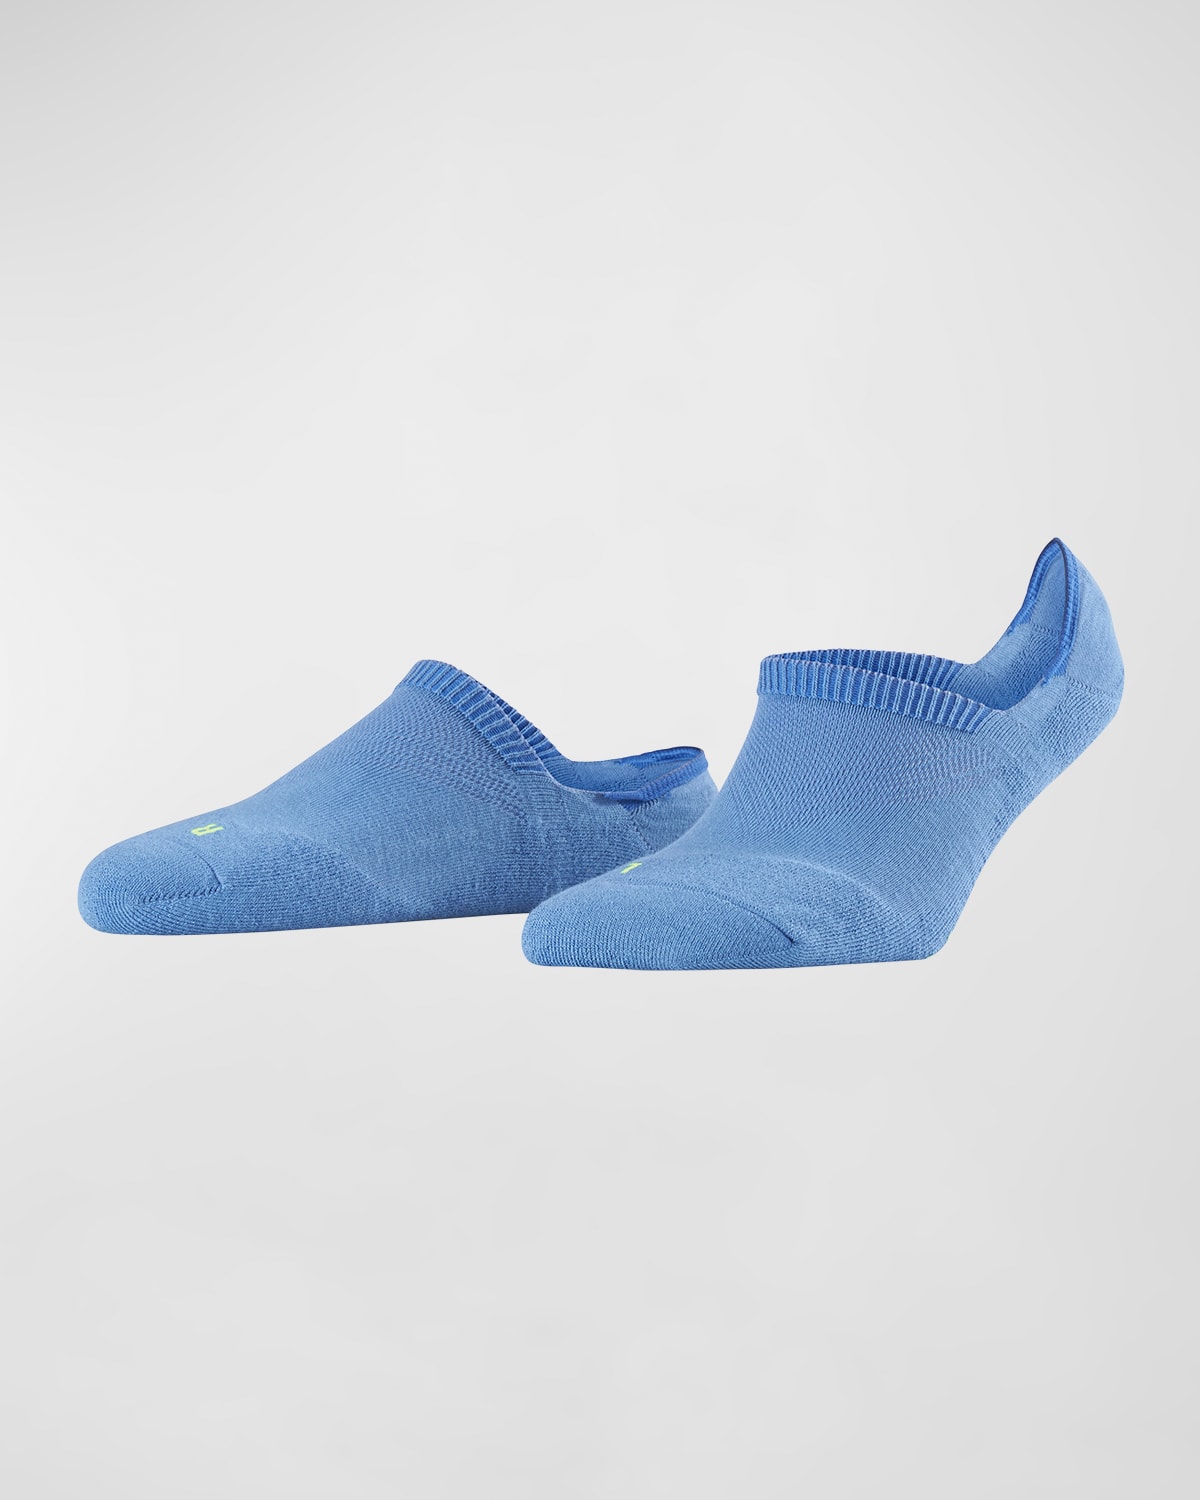 Cool Kick Invisible Socks